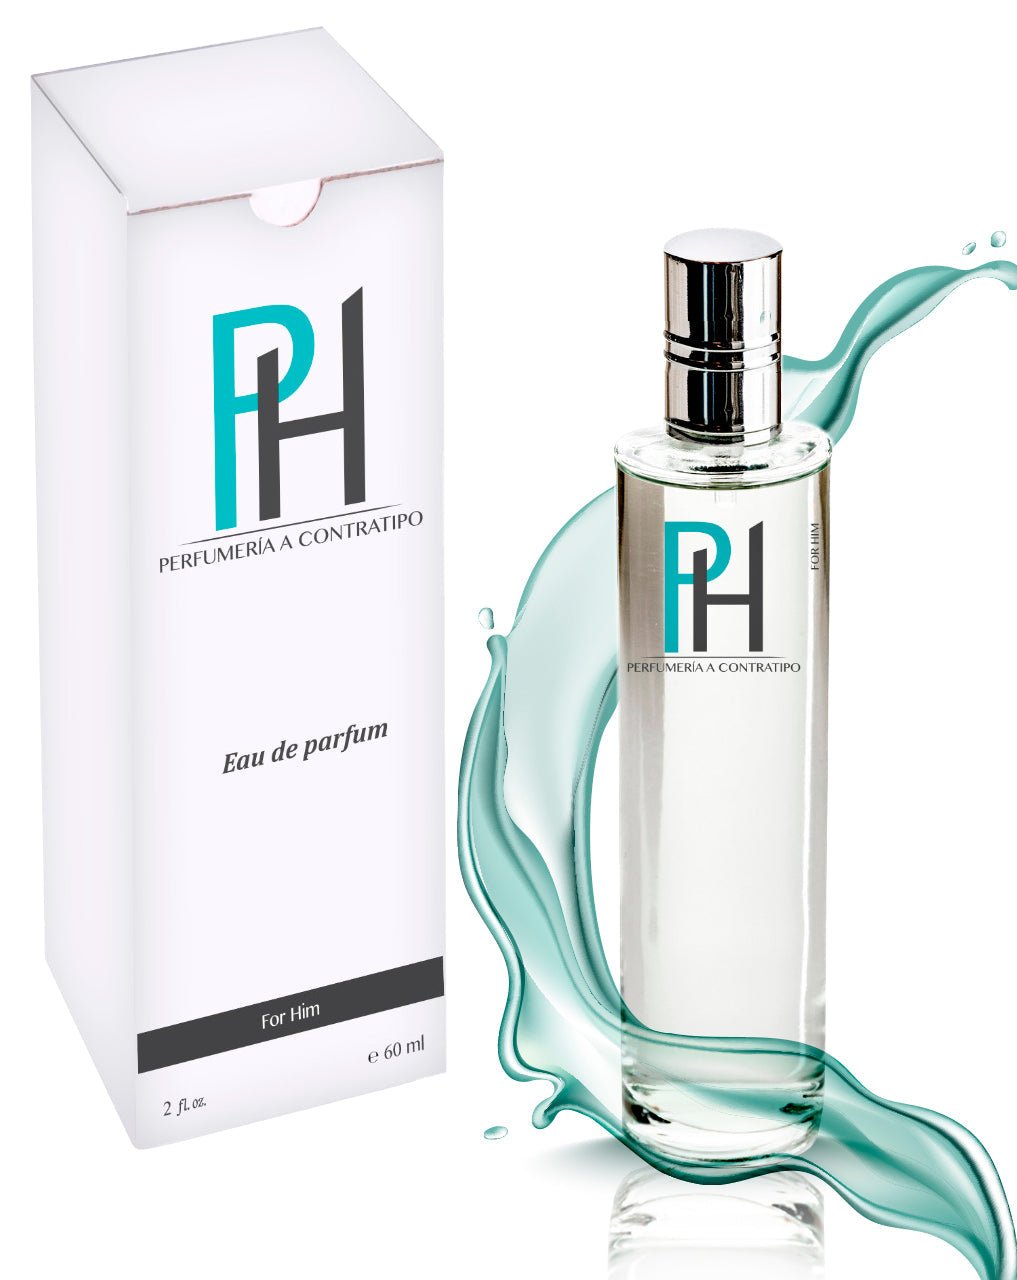 Perfume Terre de 60 ml - PH Perfumería a Contratipo